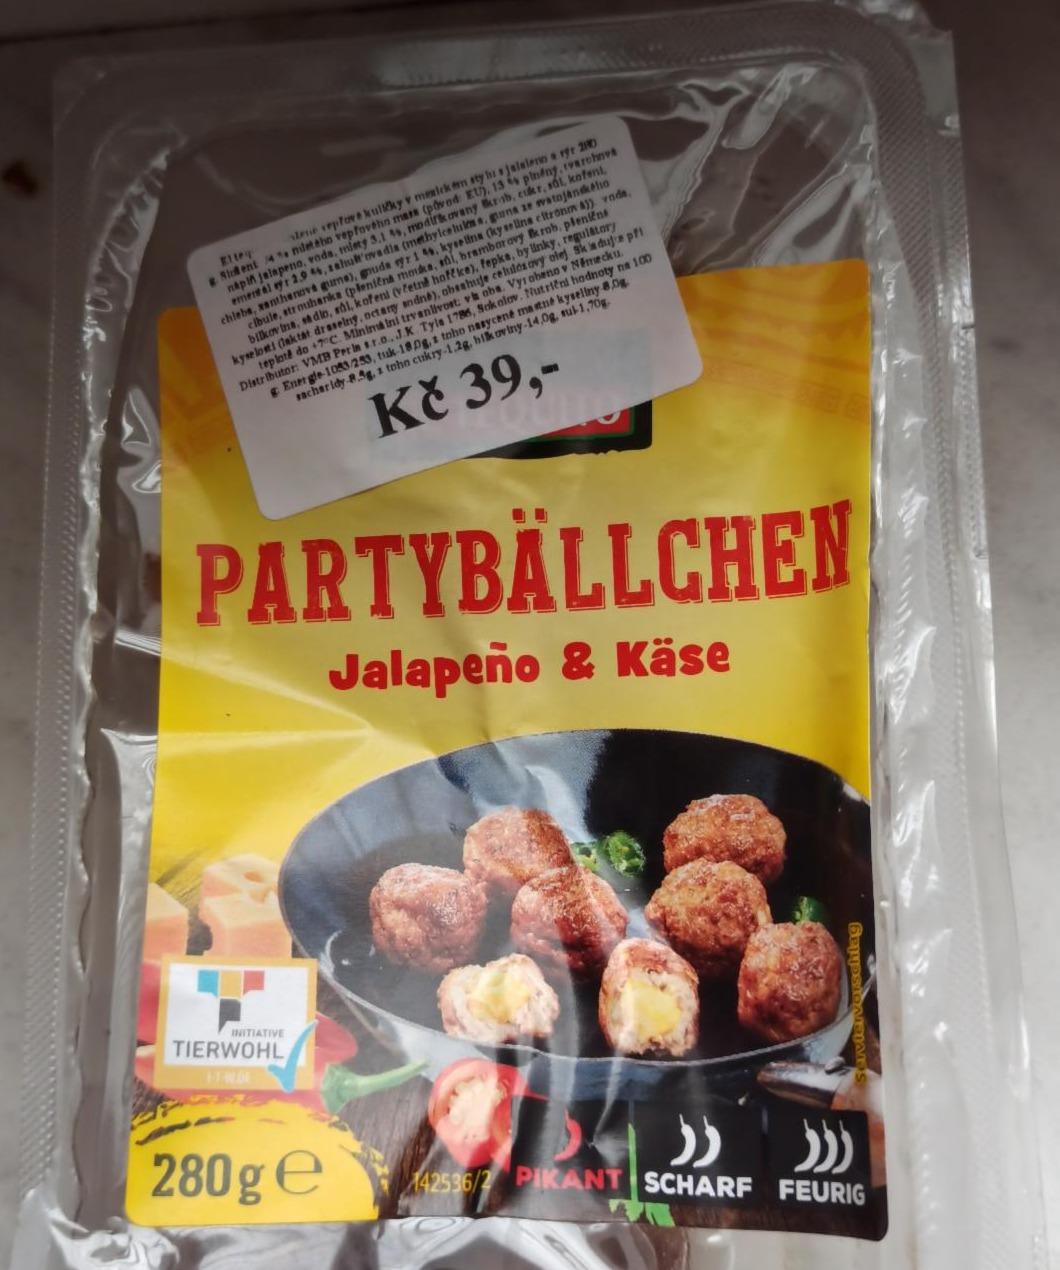 nutriční Partybällchen a - hodnoty Jalapeño kJ kalorie, Käse &